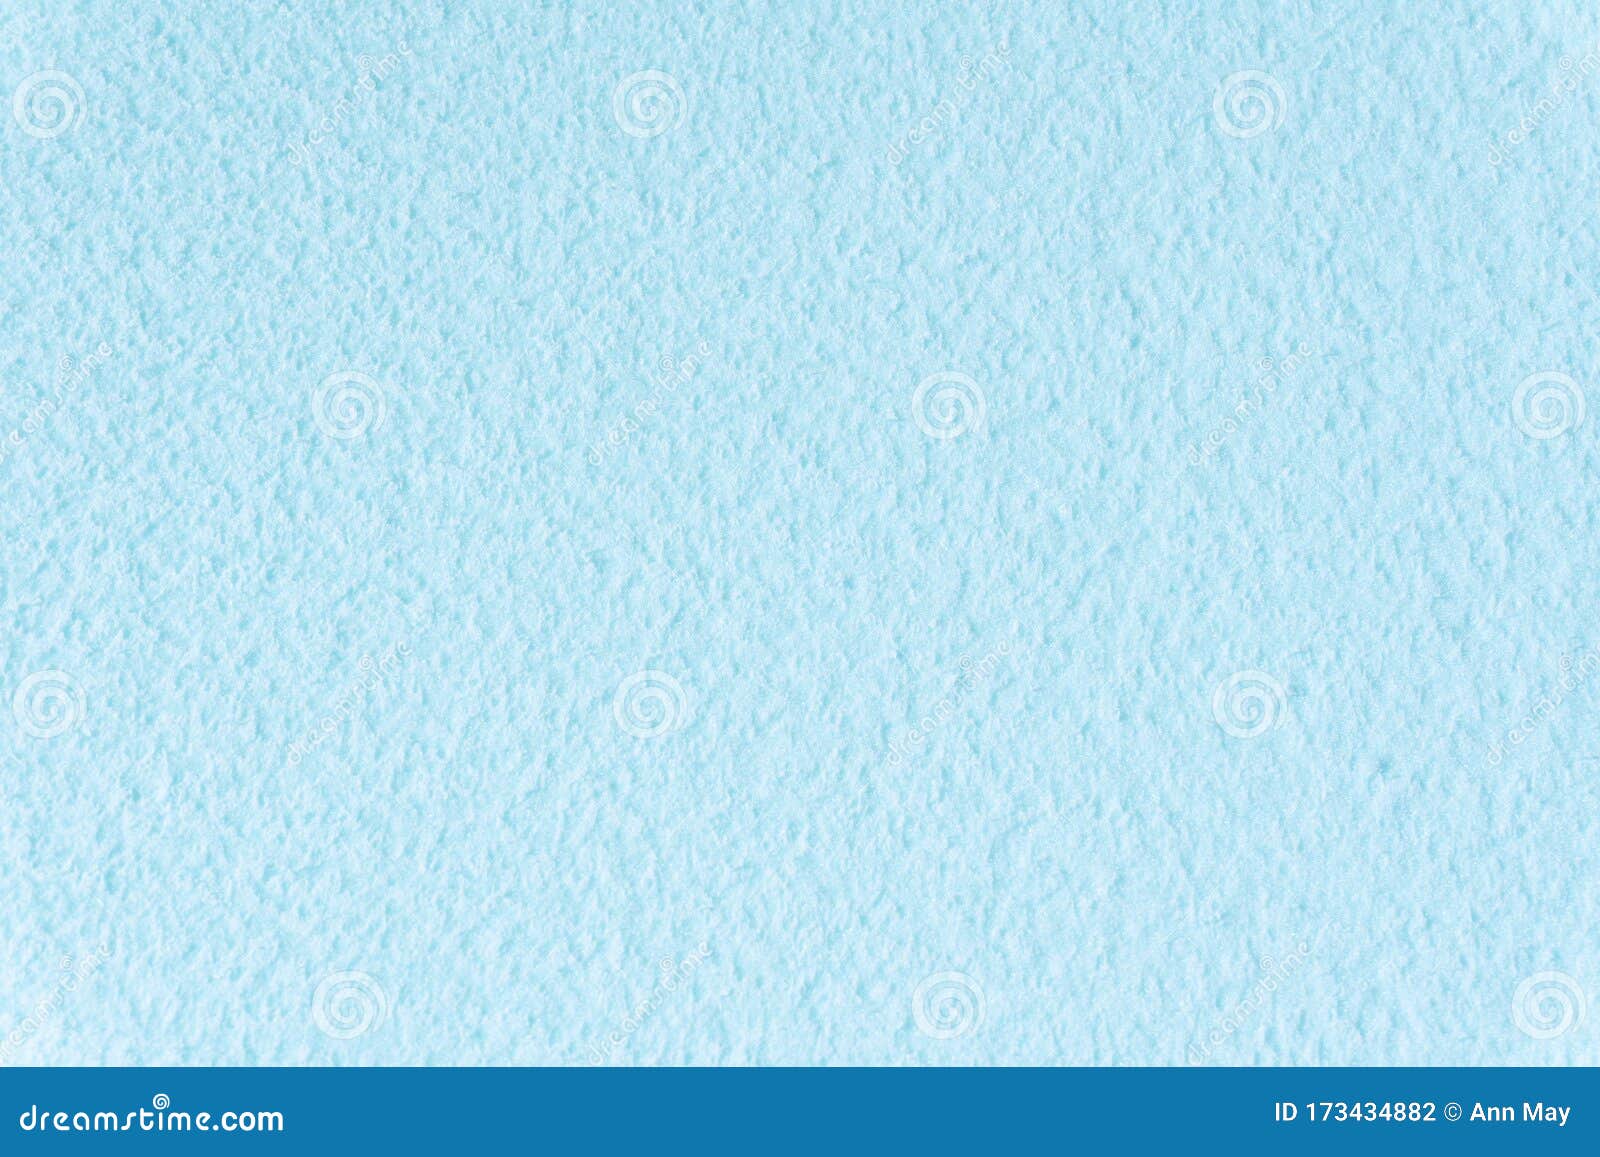 wallpaper single blue plain one colour solid color light blue a4a5fd